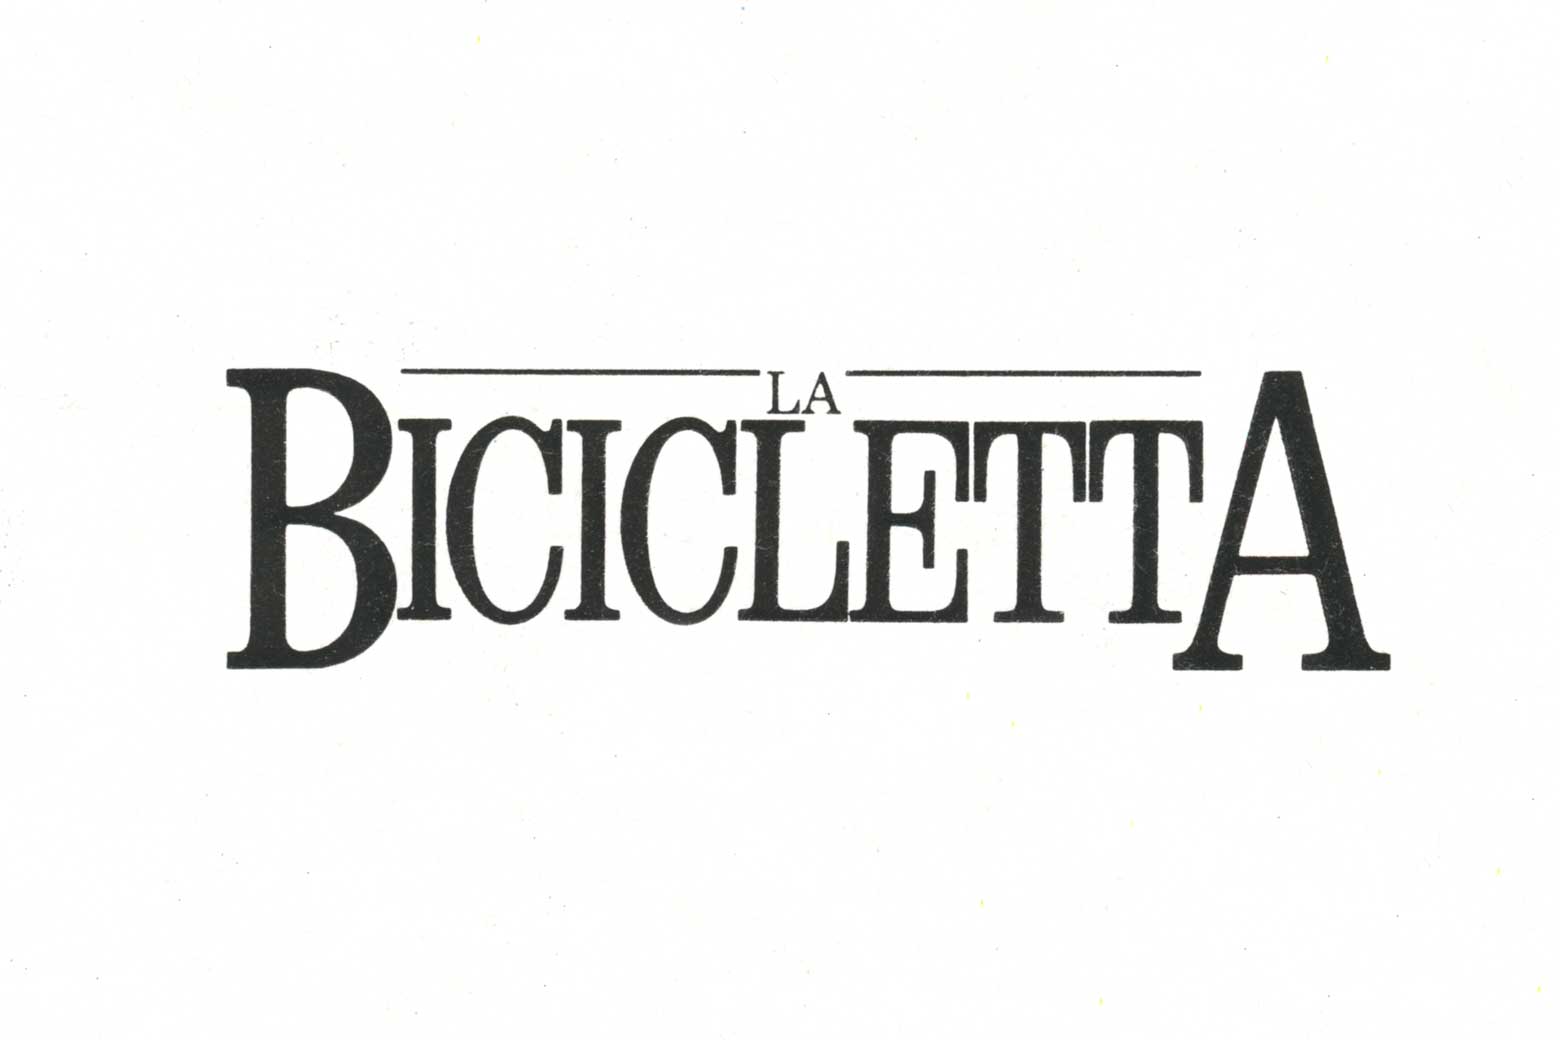 La Bicicletta logo main image